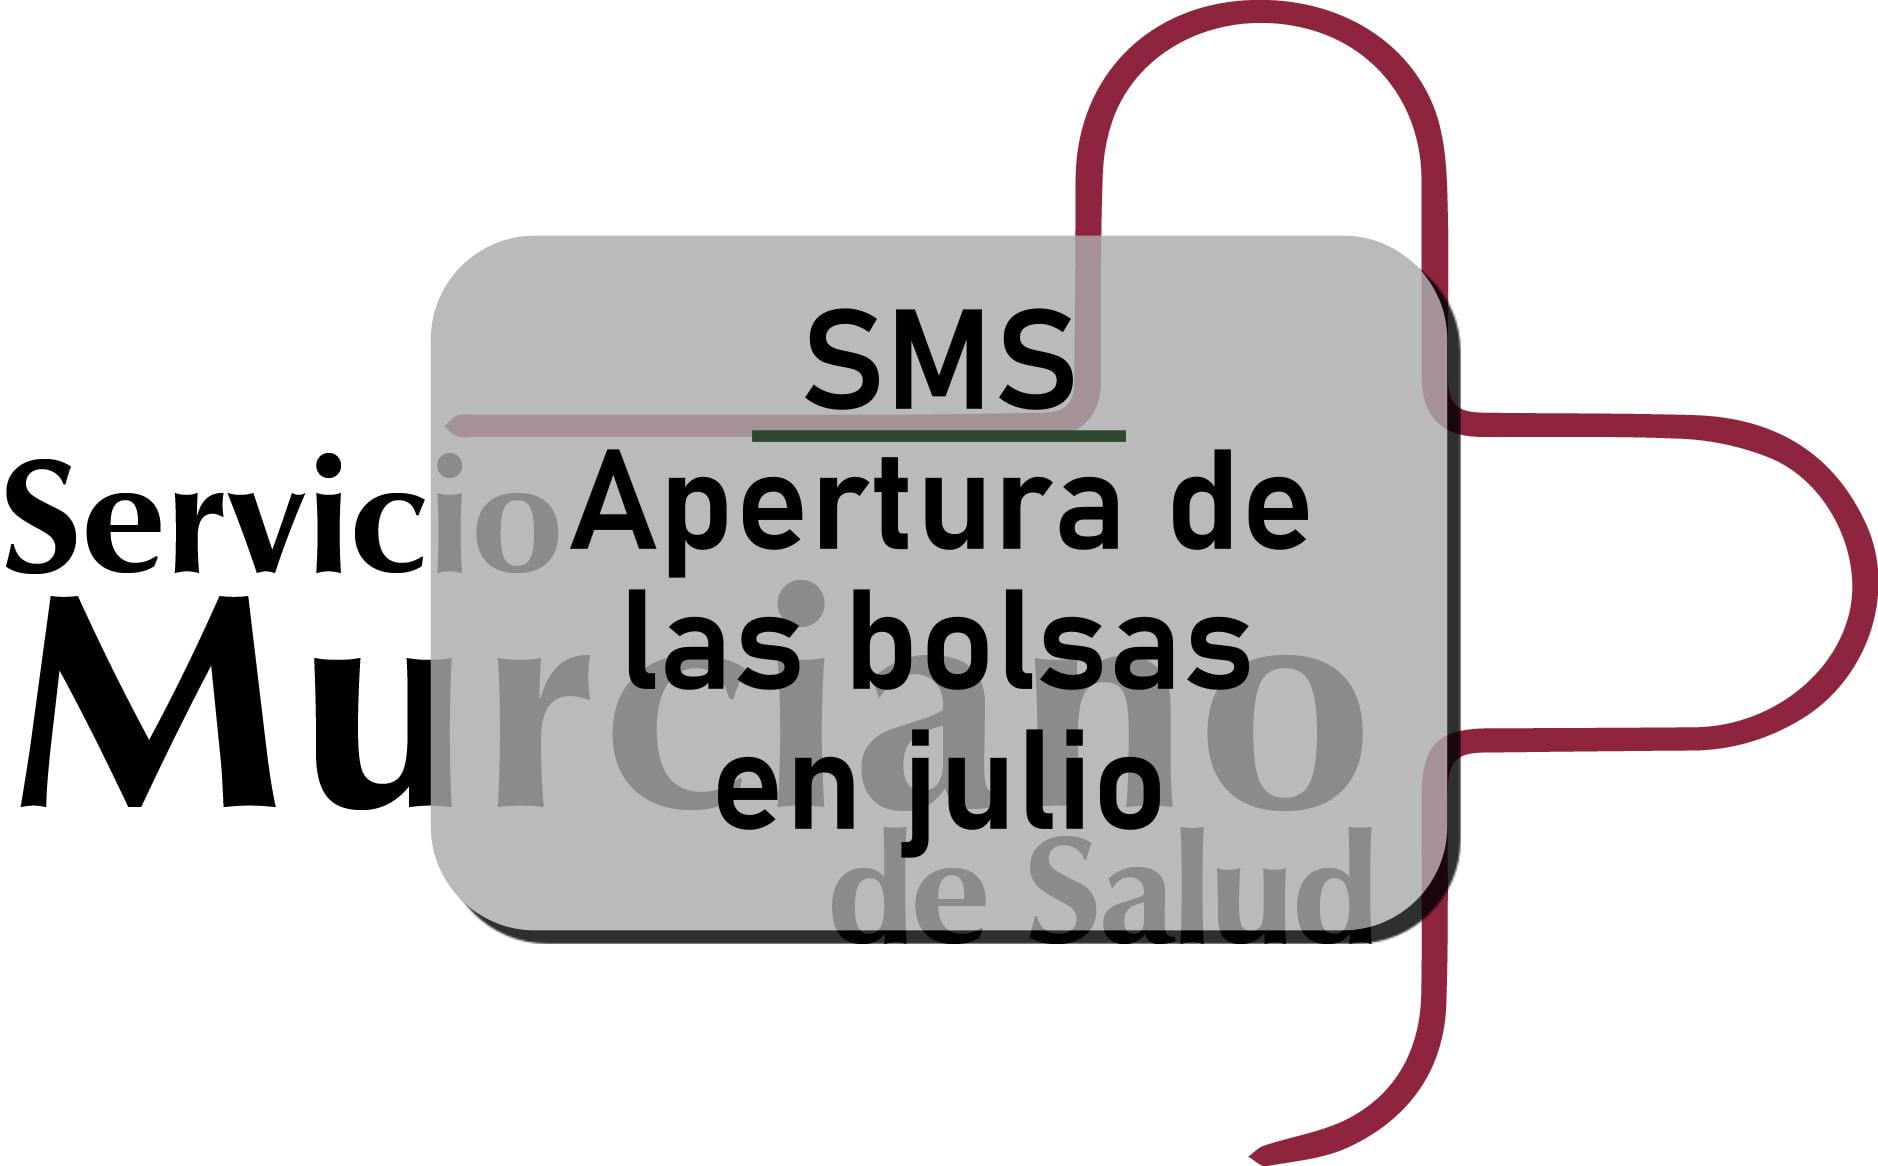 Dirigir Convencional gastos generales SMS | Nuevo calendario de apertura de bolsas | MURCIAOPOSICIONES.com